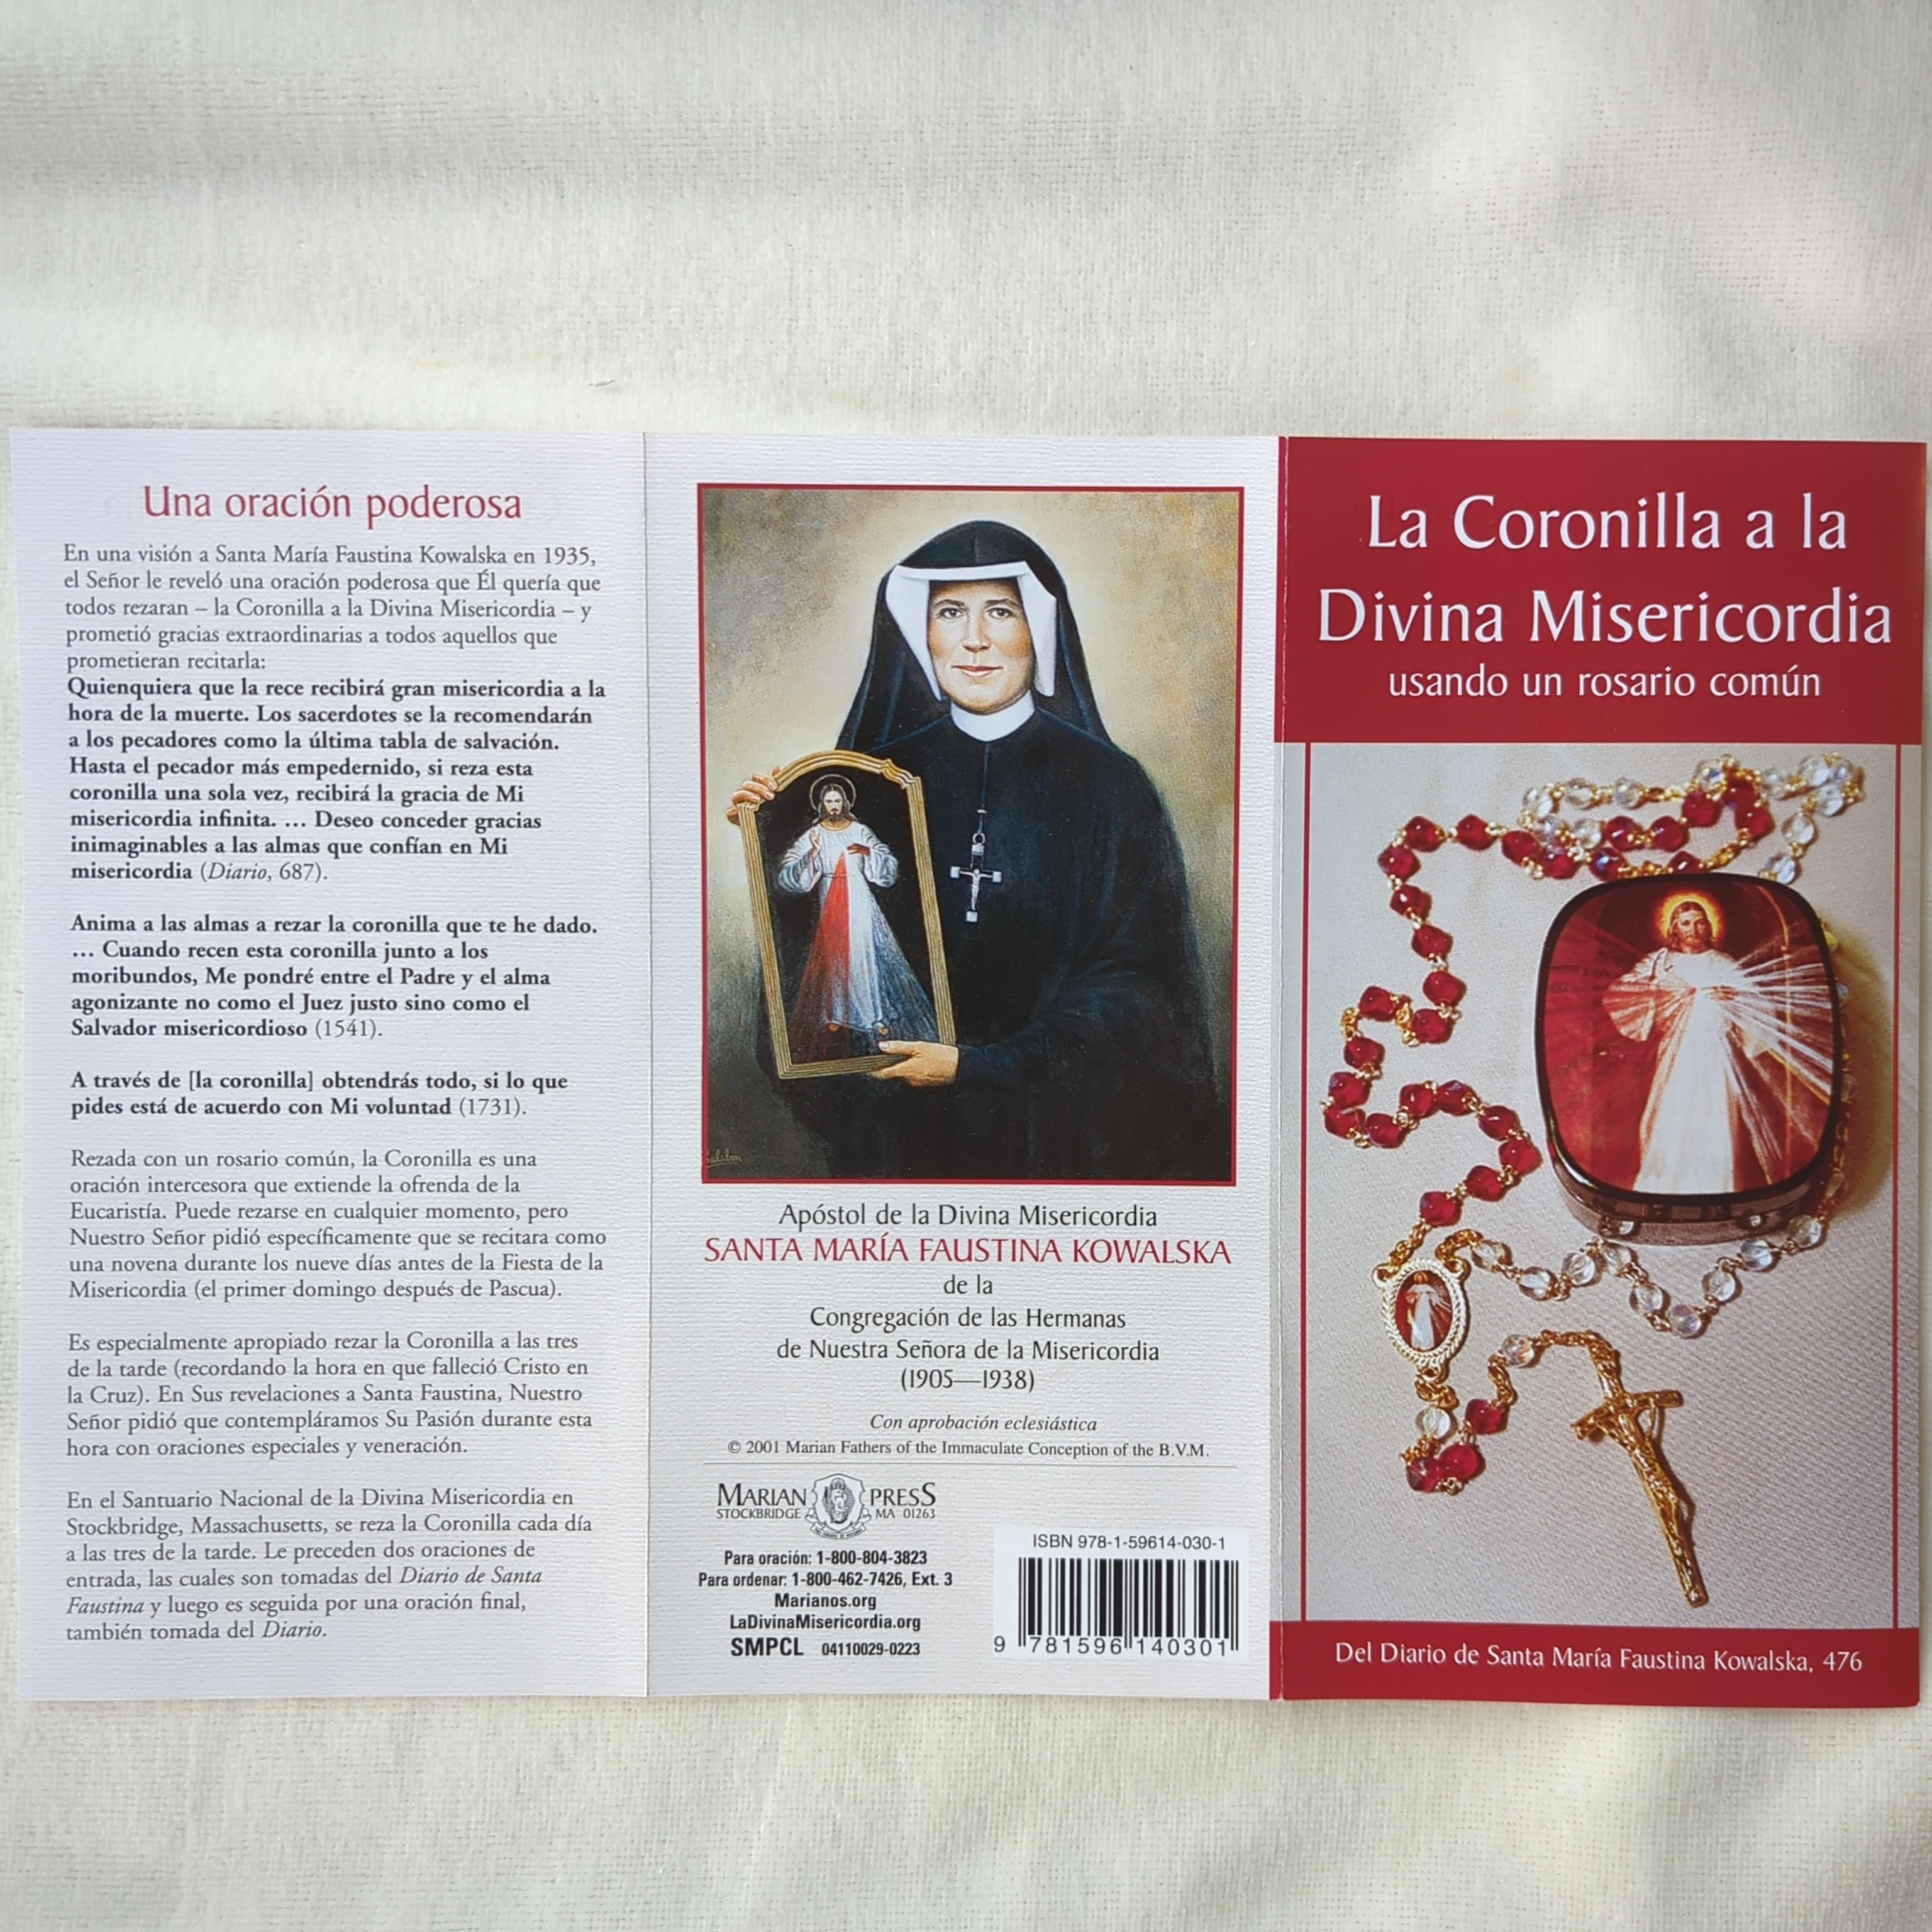 La Coronilla a la Divina Misericordia, Coronilla de la Divina Misericordia, Español 